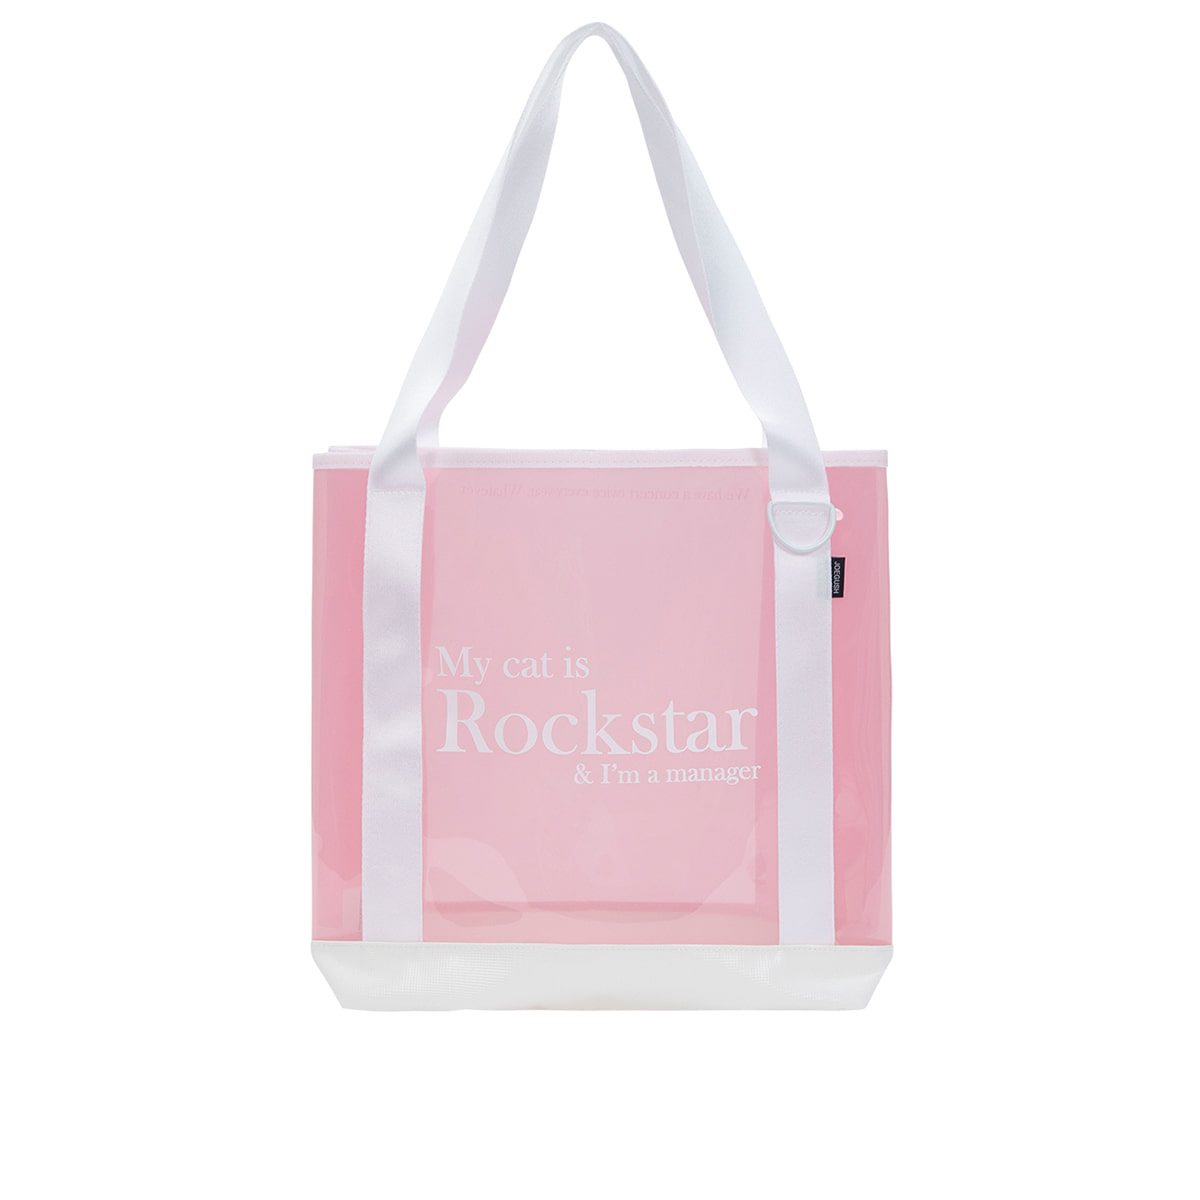 Rockstar pvc tote bag (White/Pink)